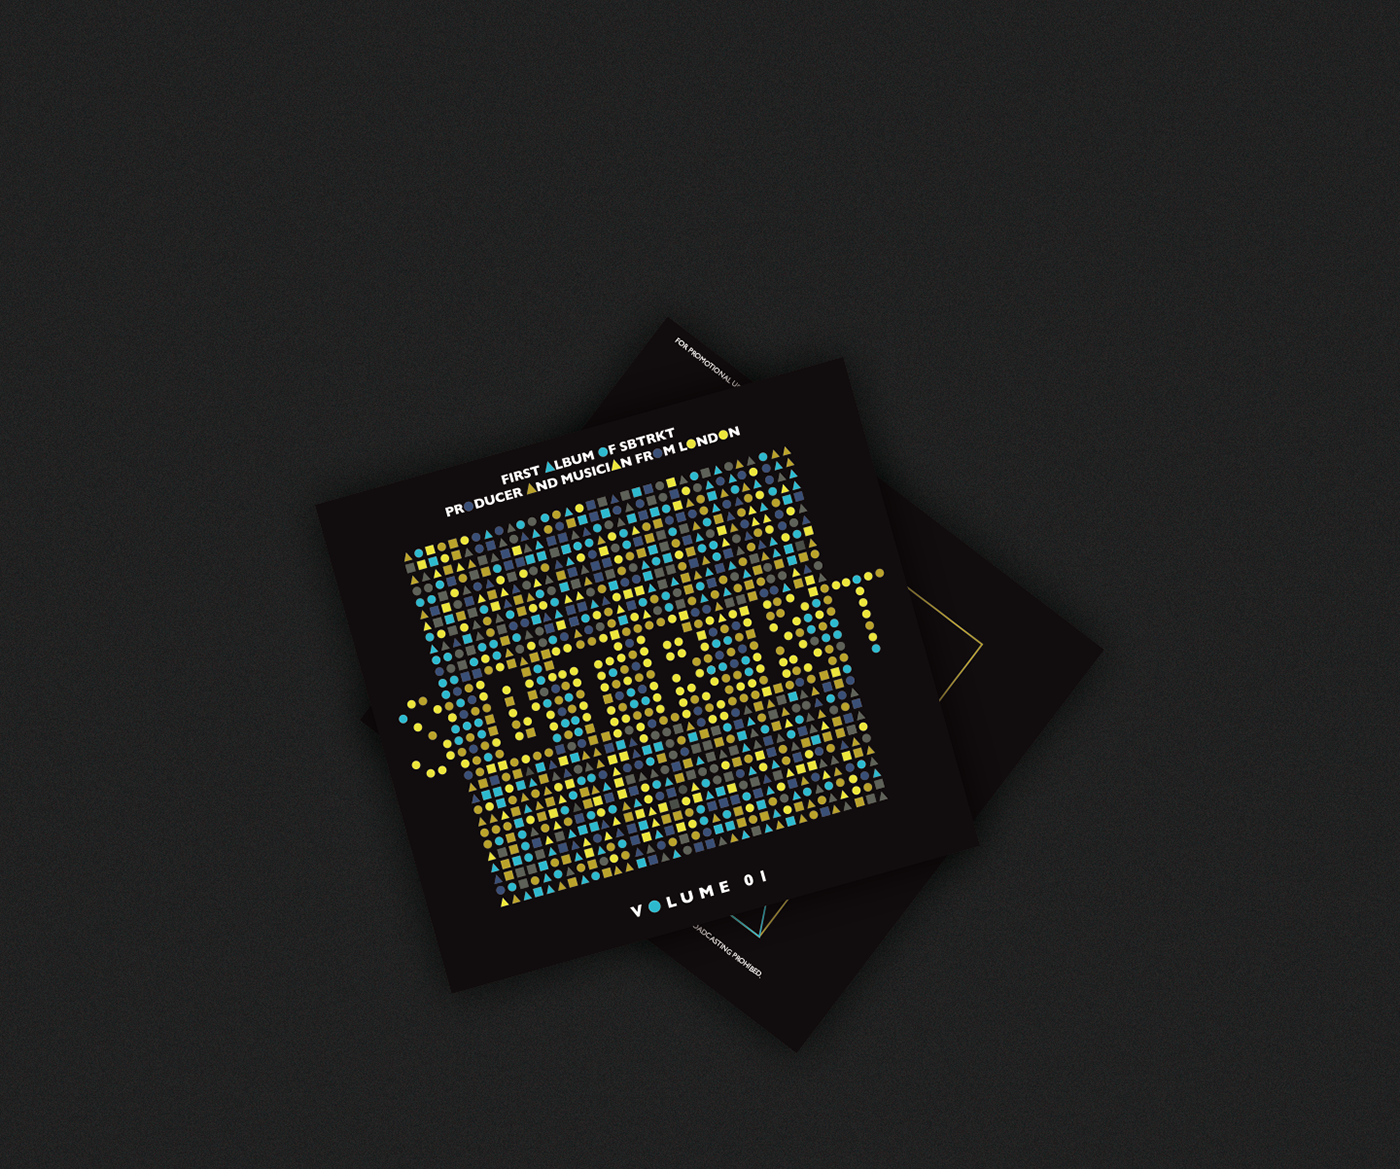 SBTRKT CD cover music poster geometric black identity